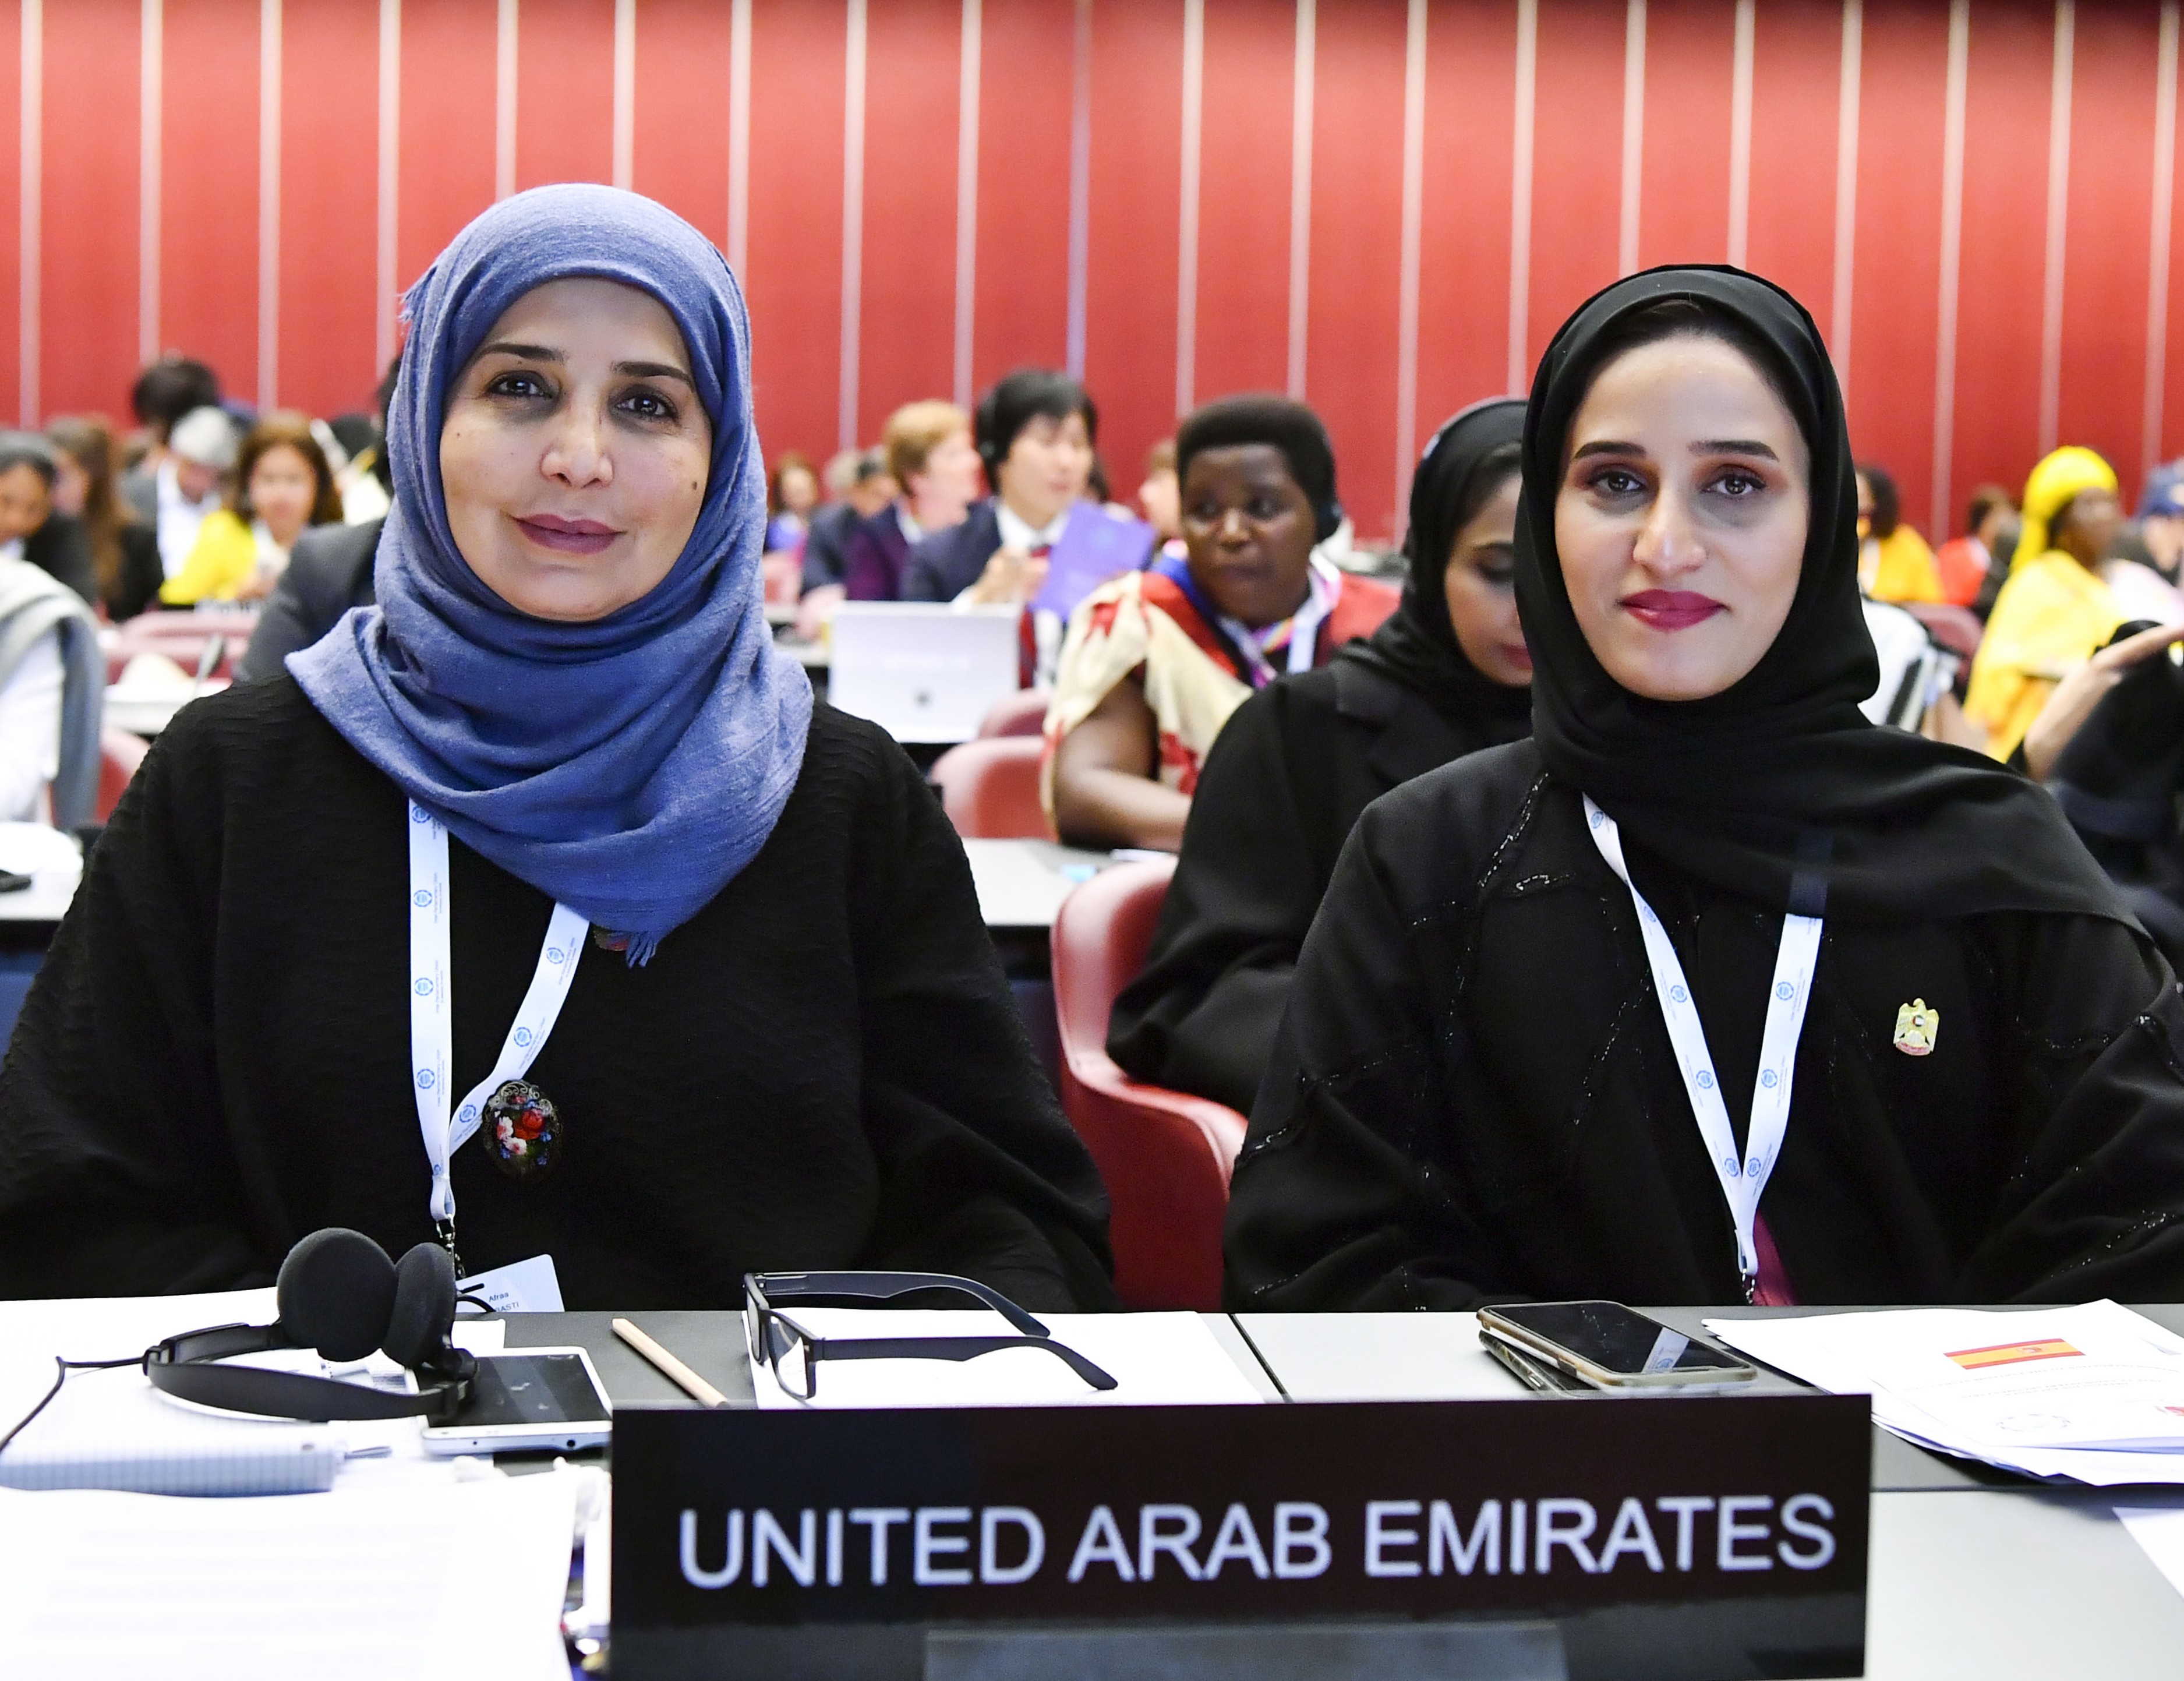  نائبات في البرلمان الإماراتي خلال مشاركتهنّ في منتدى النساء البرلمانيات ضمن اجتماعات الاتحاد البرلماني الدولي في جنيف 